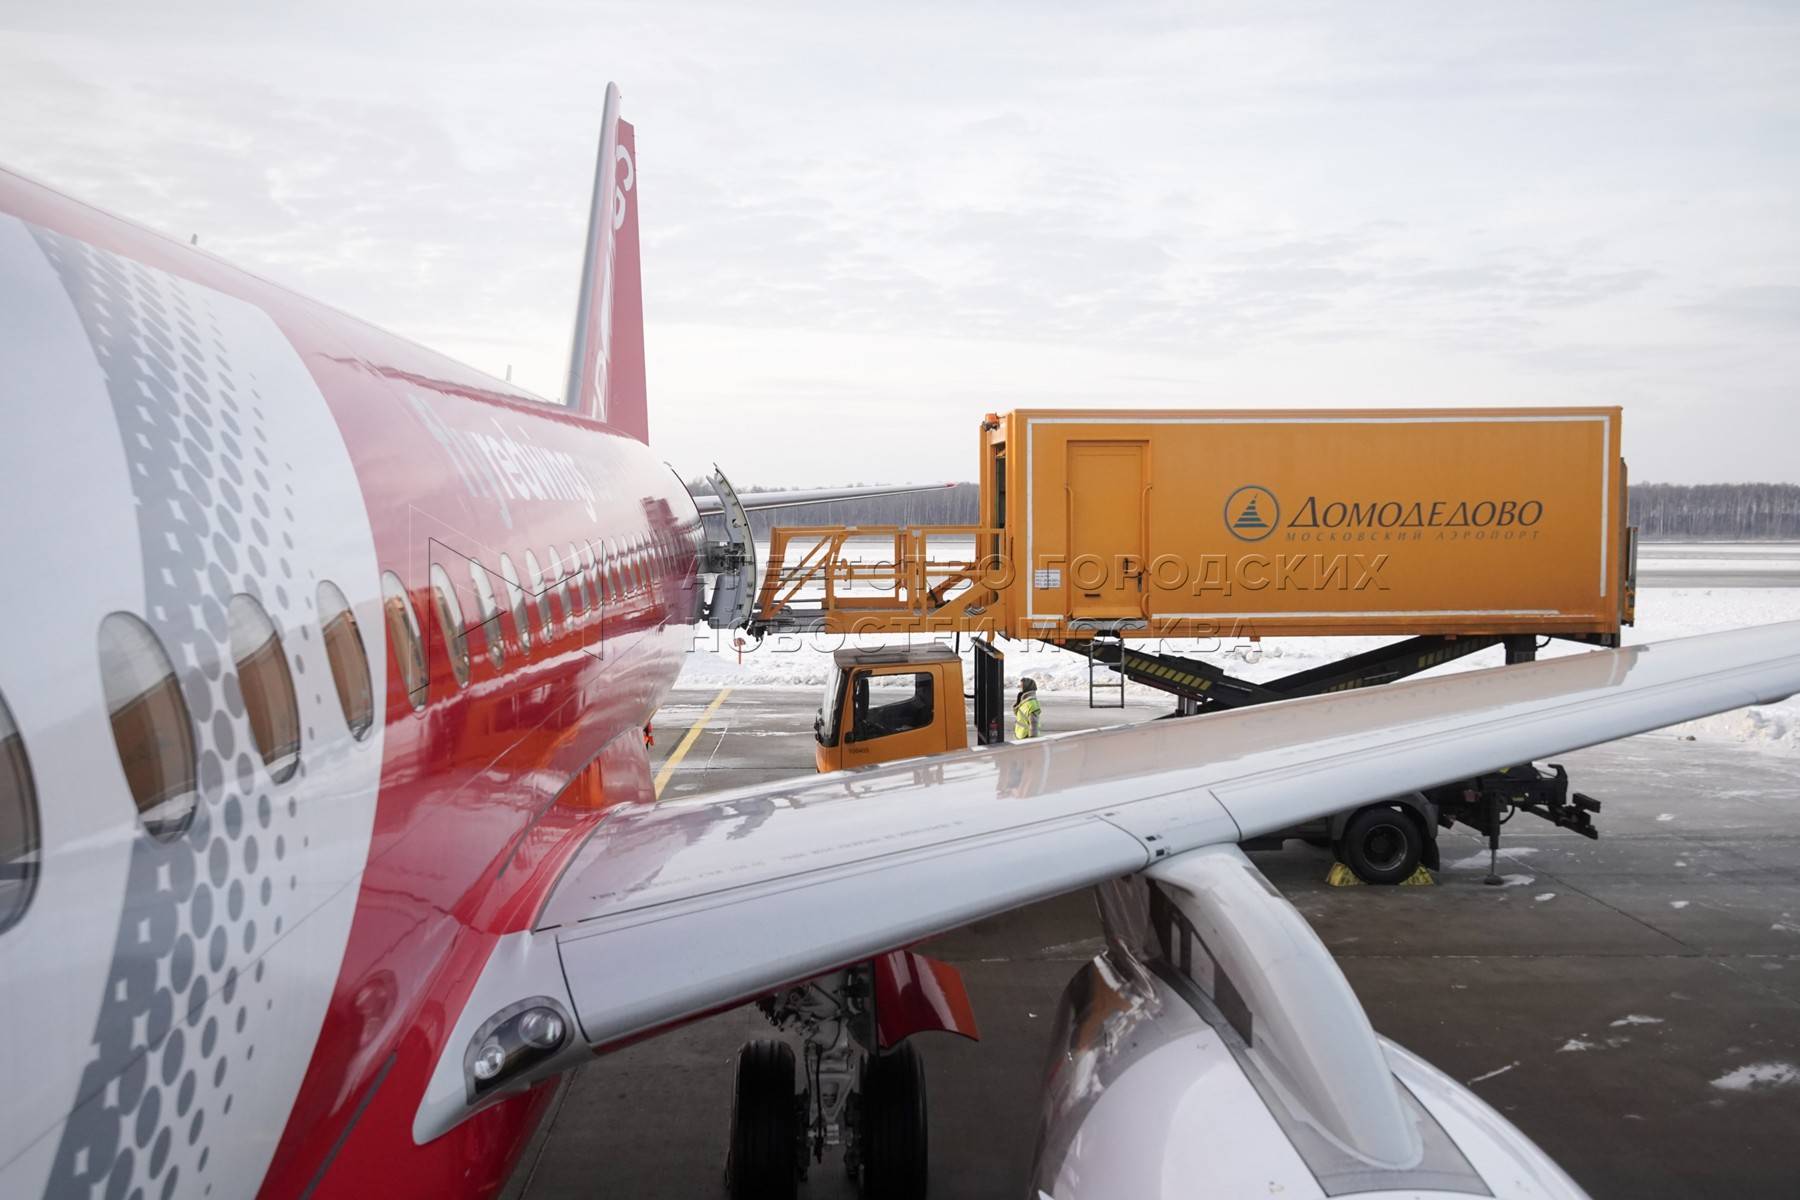 Ред вингс авиакомпания - официальный сайт red wings airlines, контакты, авиабилеты и расписание рейсов  2021